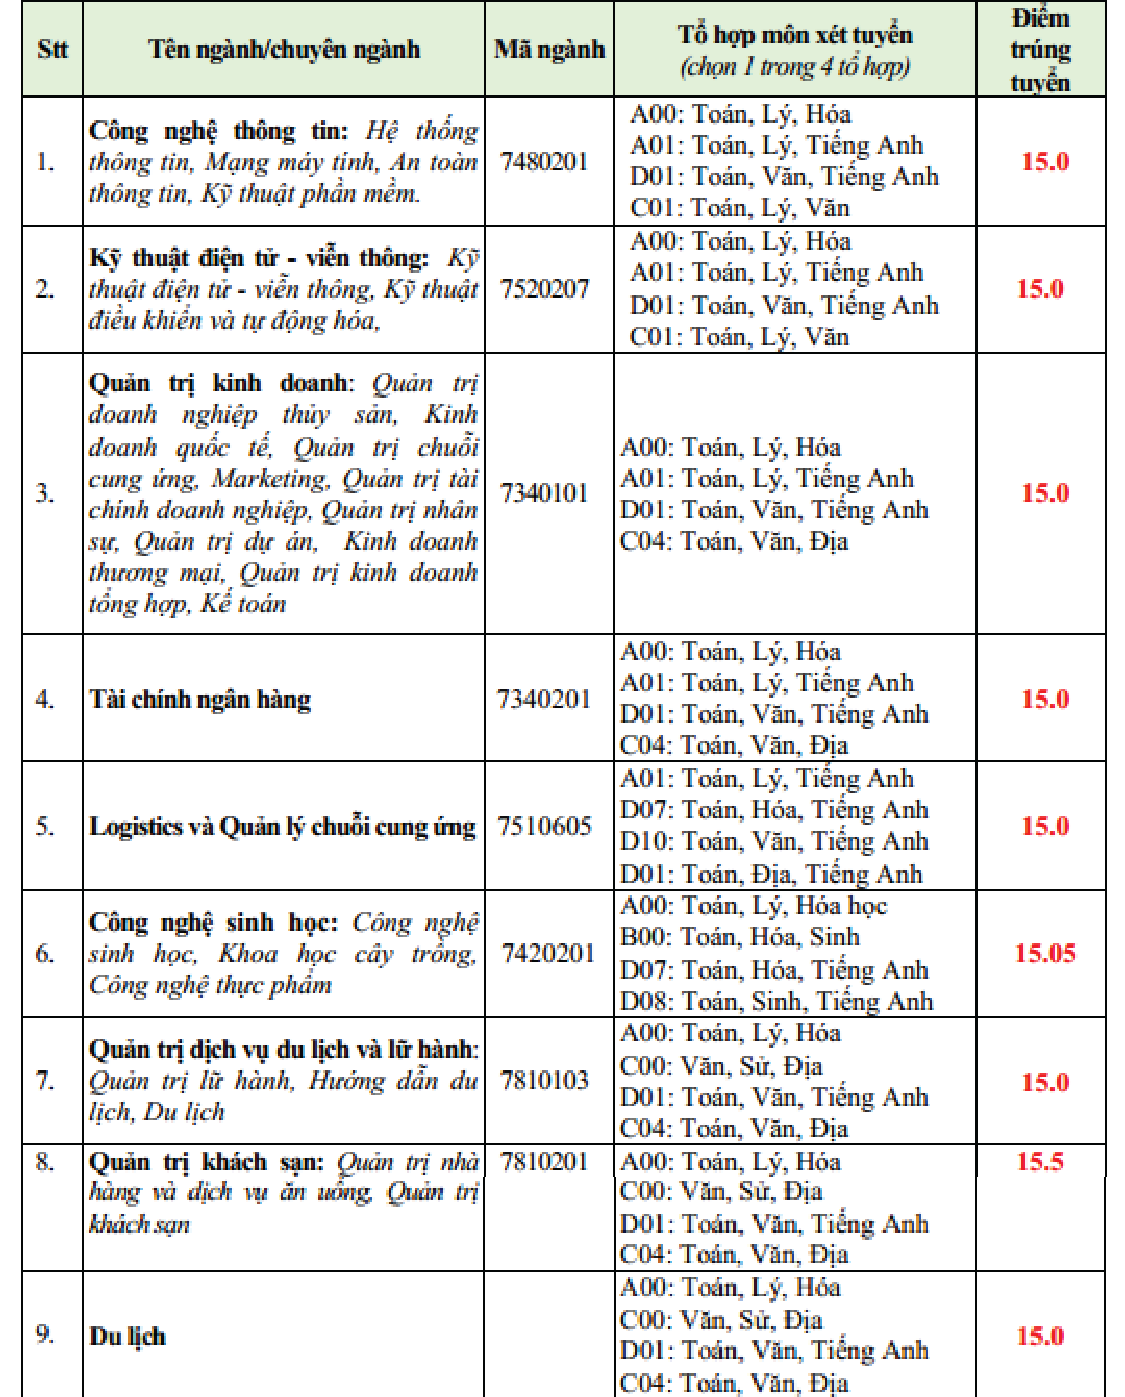 Điểm chuẩn 2019 Trường ĐH Văn Hiến: ngành Việt Nam học lấy điểm cao nhất - ảnh 1